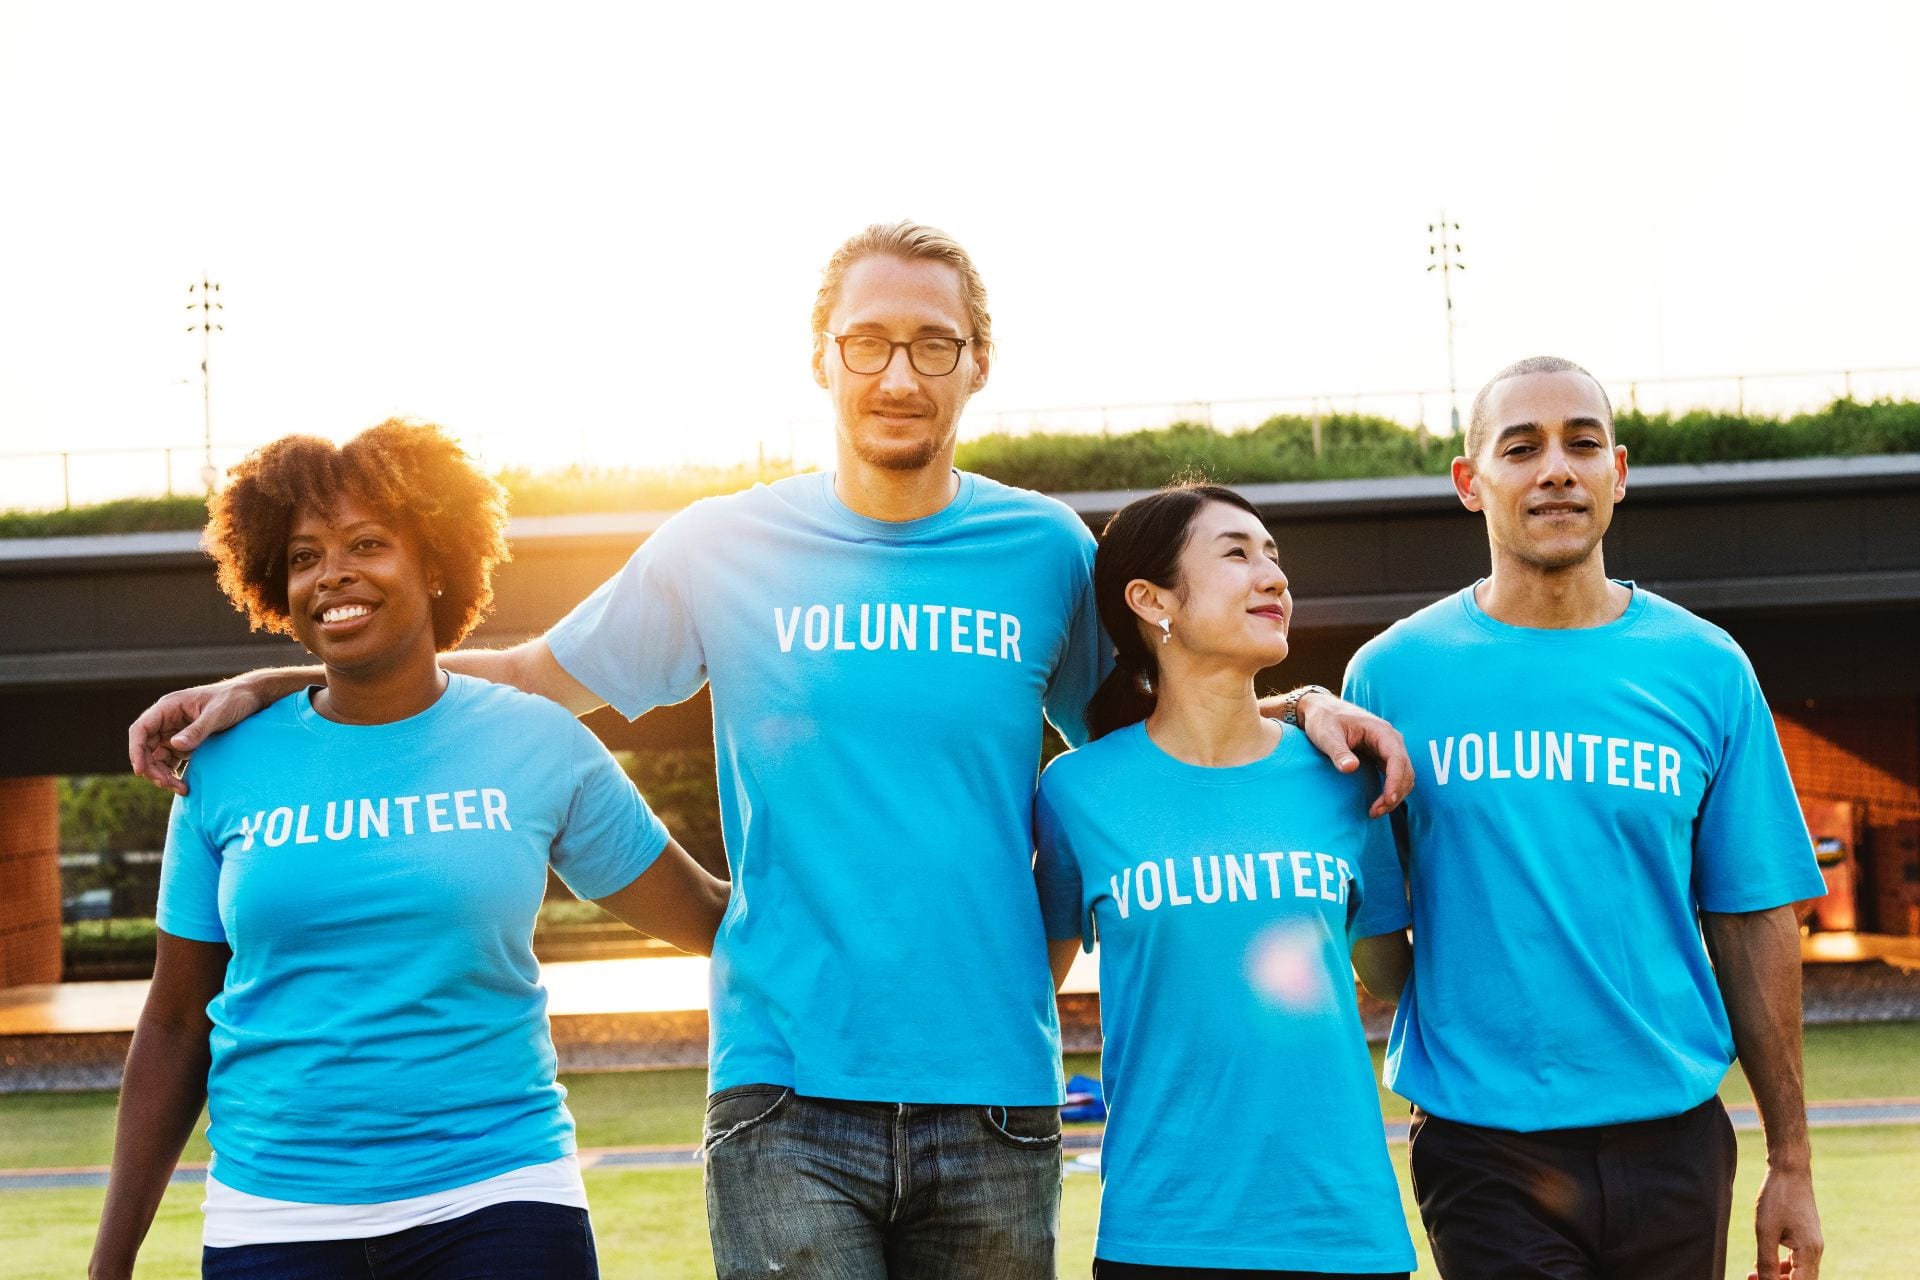 The benefits of volunteering